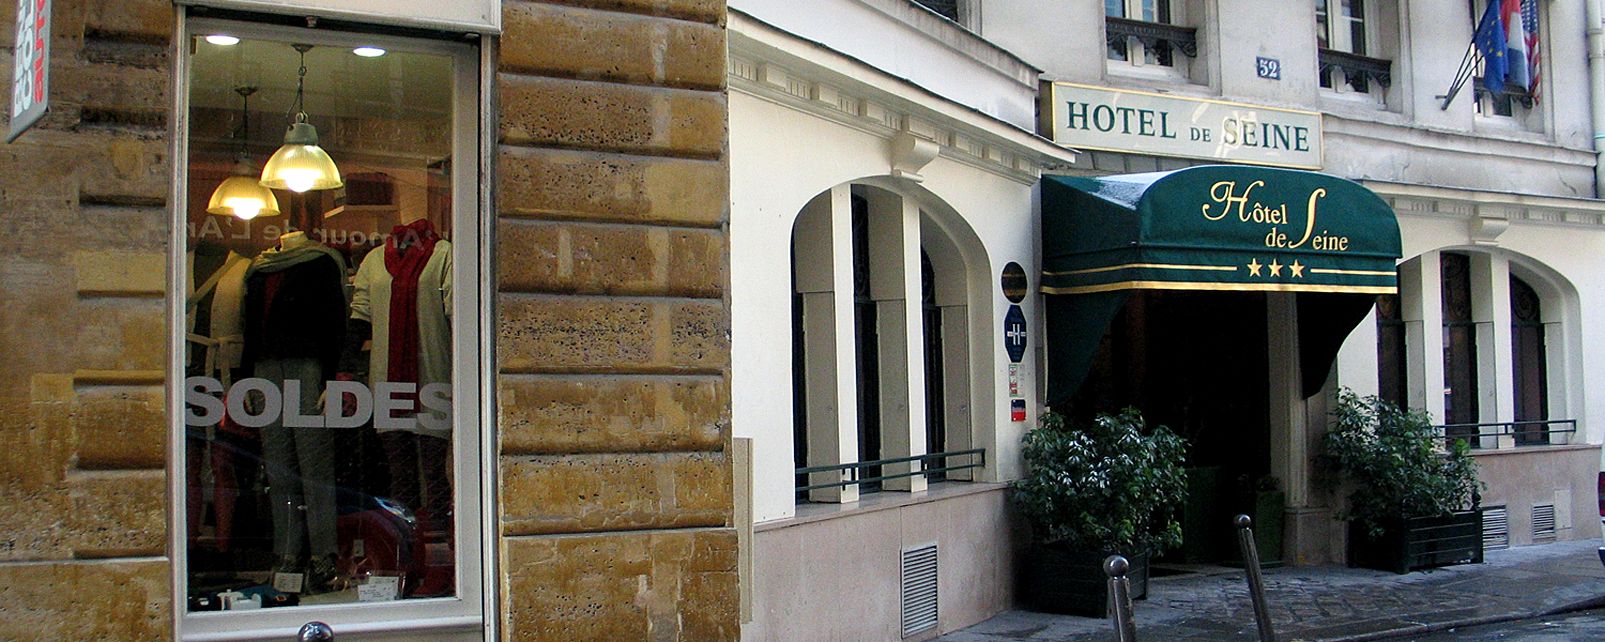 Hotel De Seine